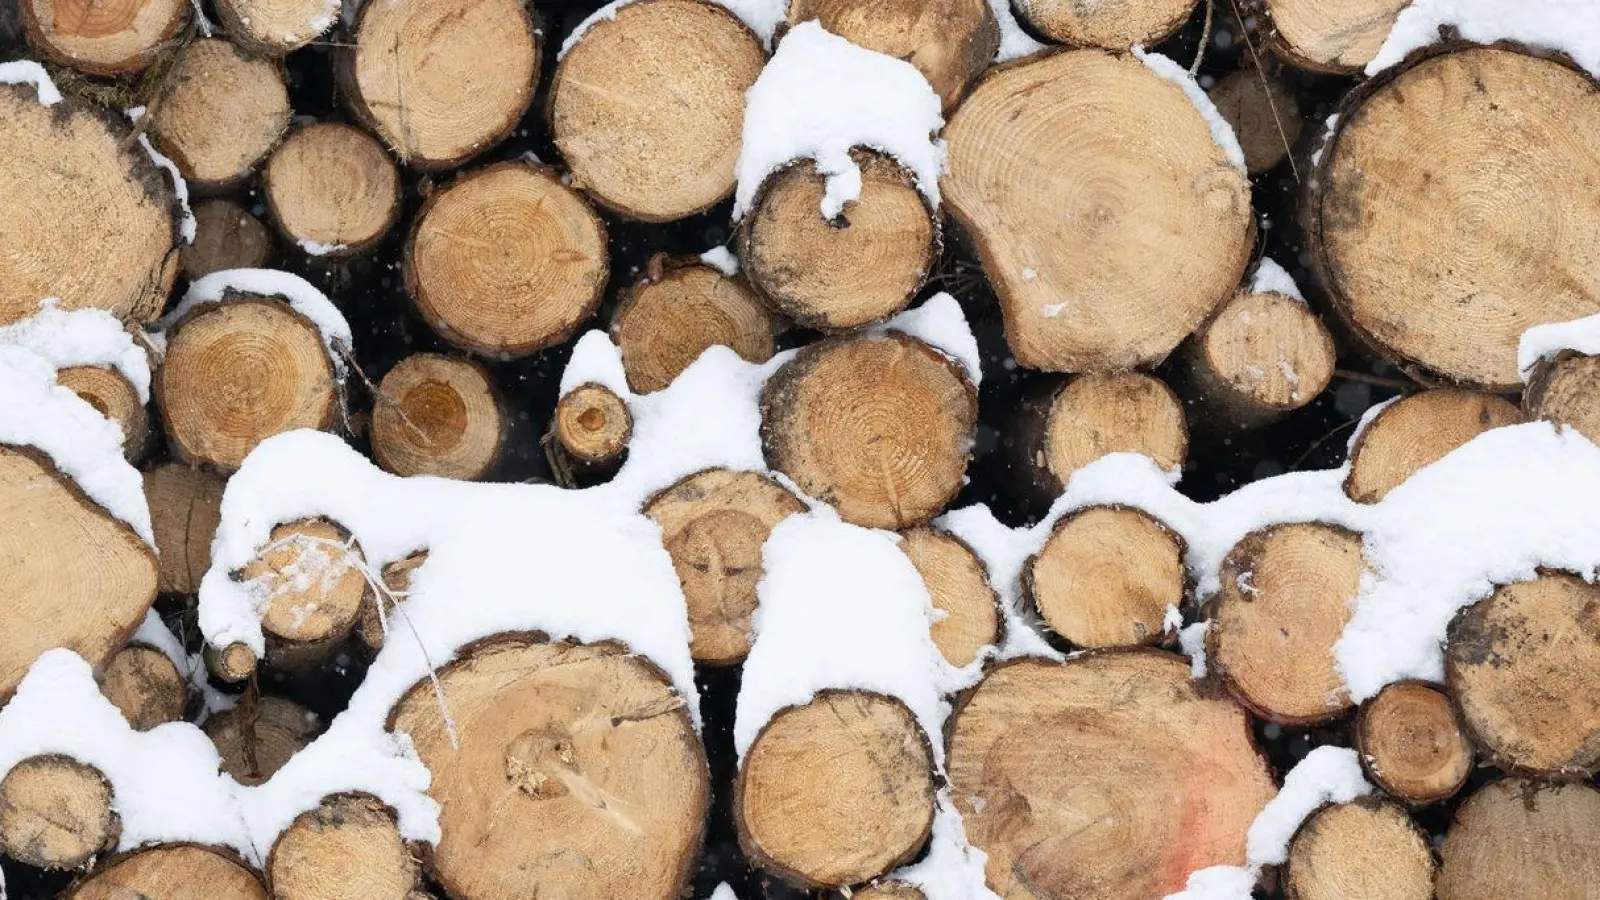 Baumaterial, Ersatz für fossile Produkte und erneuerbare Energiequelle: Holz gewinnt als nachwachsender Rohstoff immer mehr an Bedeutung. (Foto: Sebastian Kahnert/dpa)